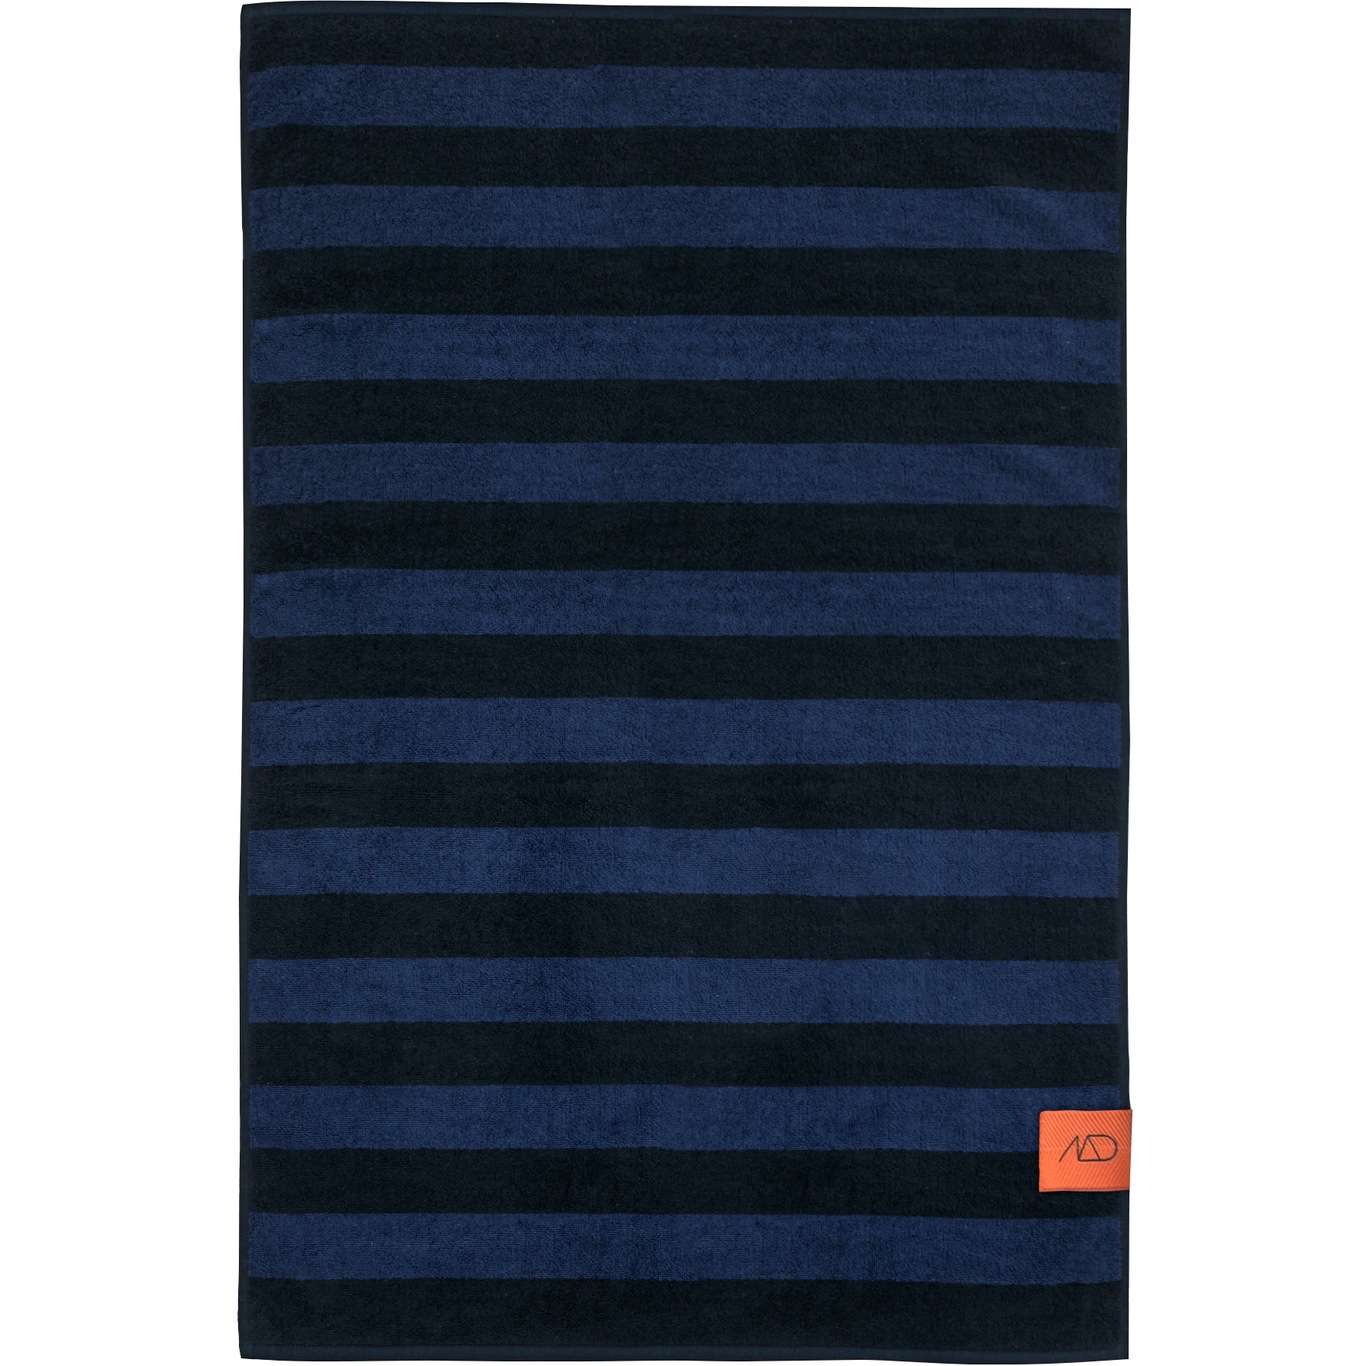 Aros Handtuch Midnight Blue 2-er Set, 35x55 cm